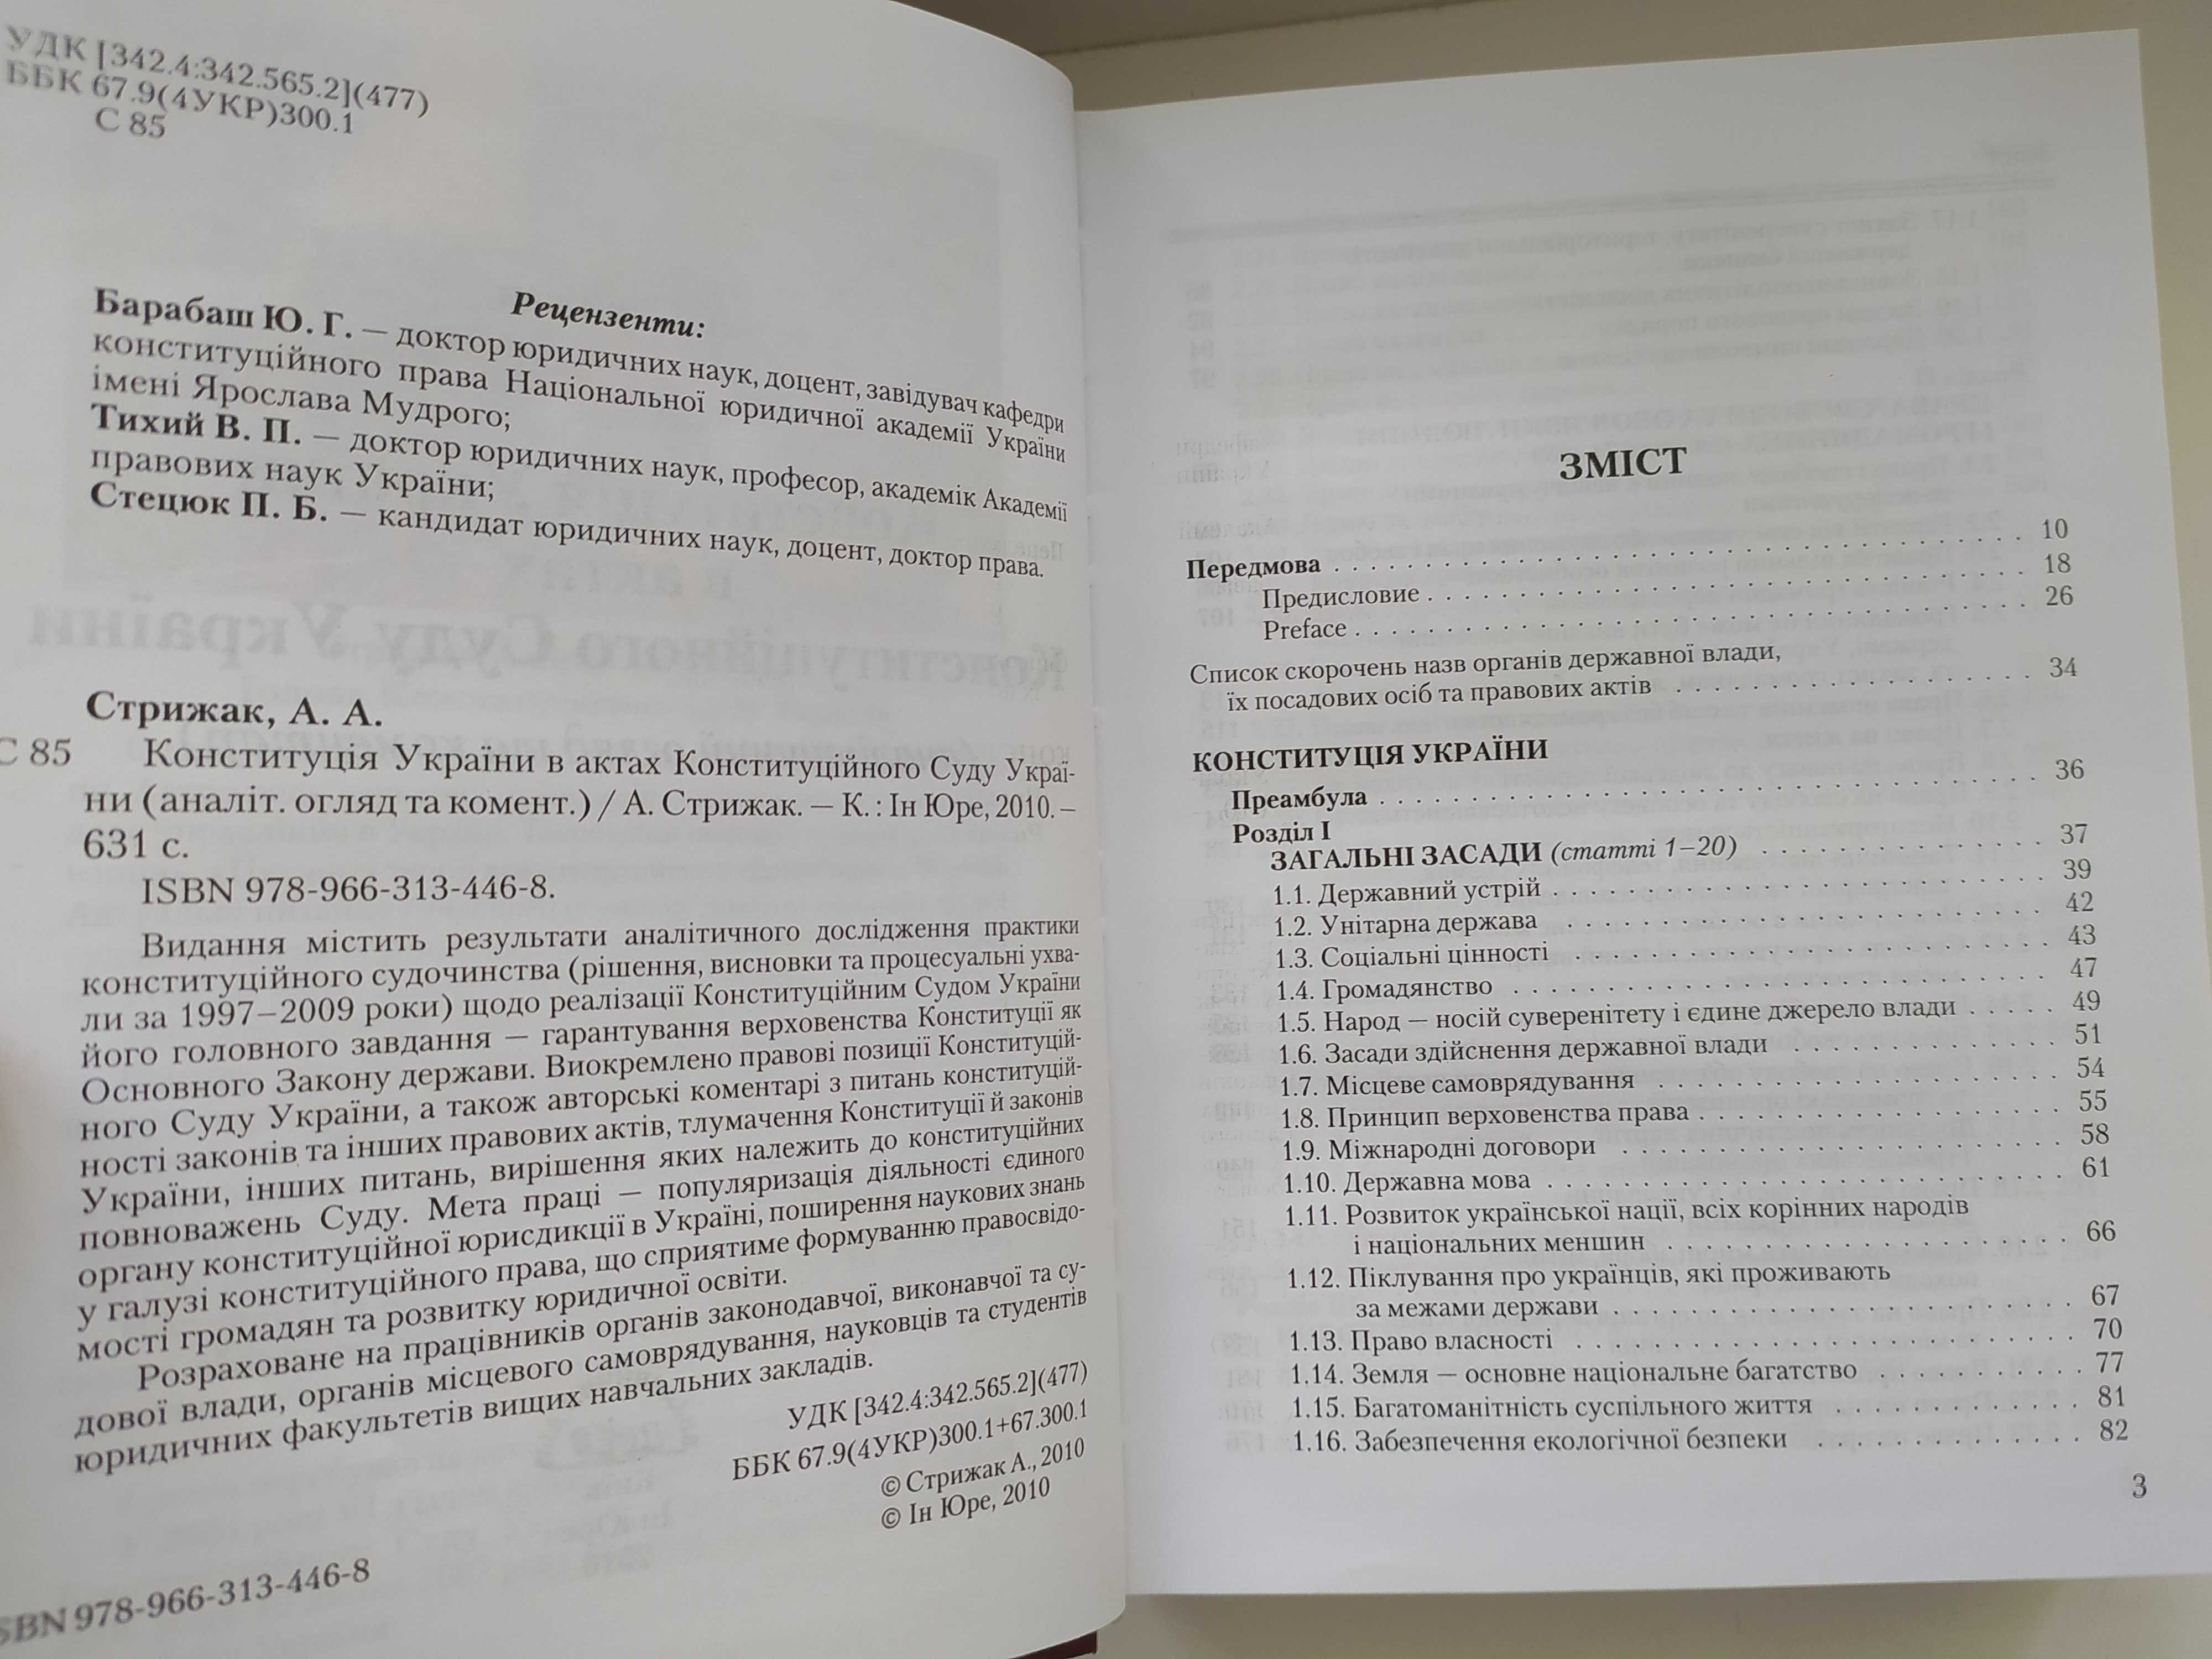 Конституція України в актах Конституційного суду України